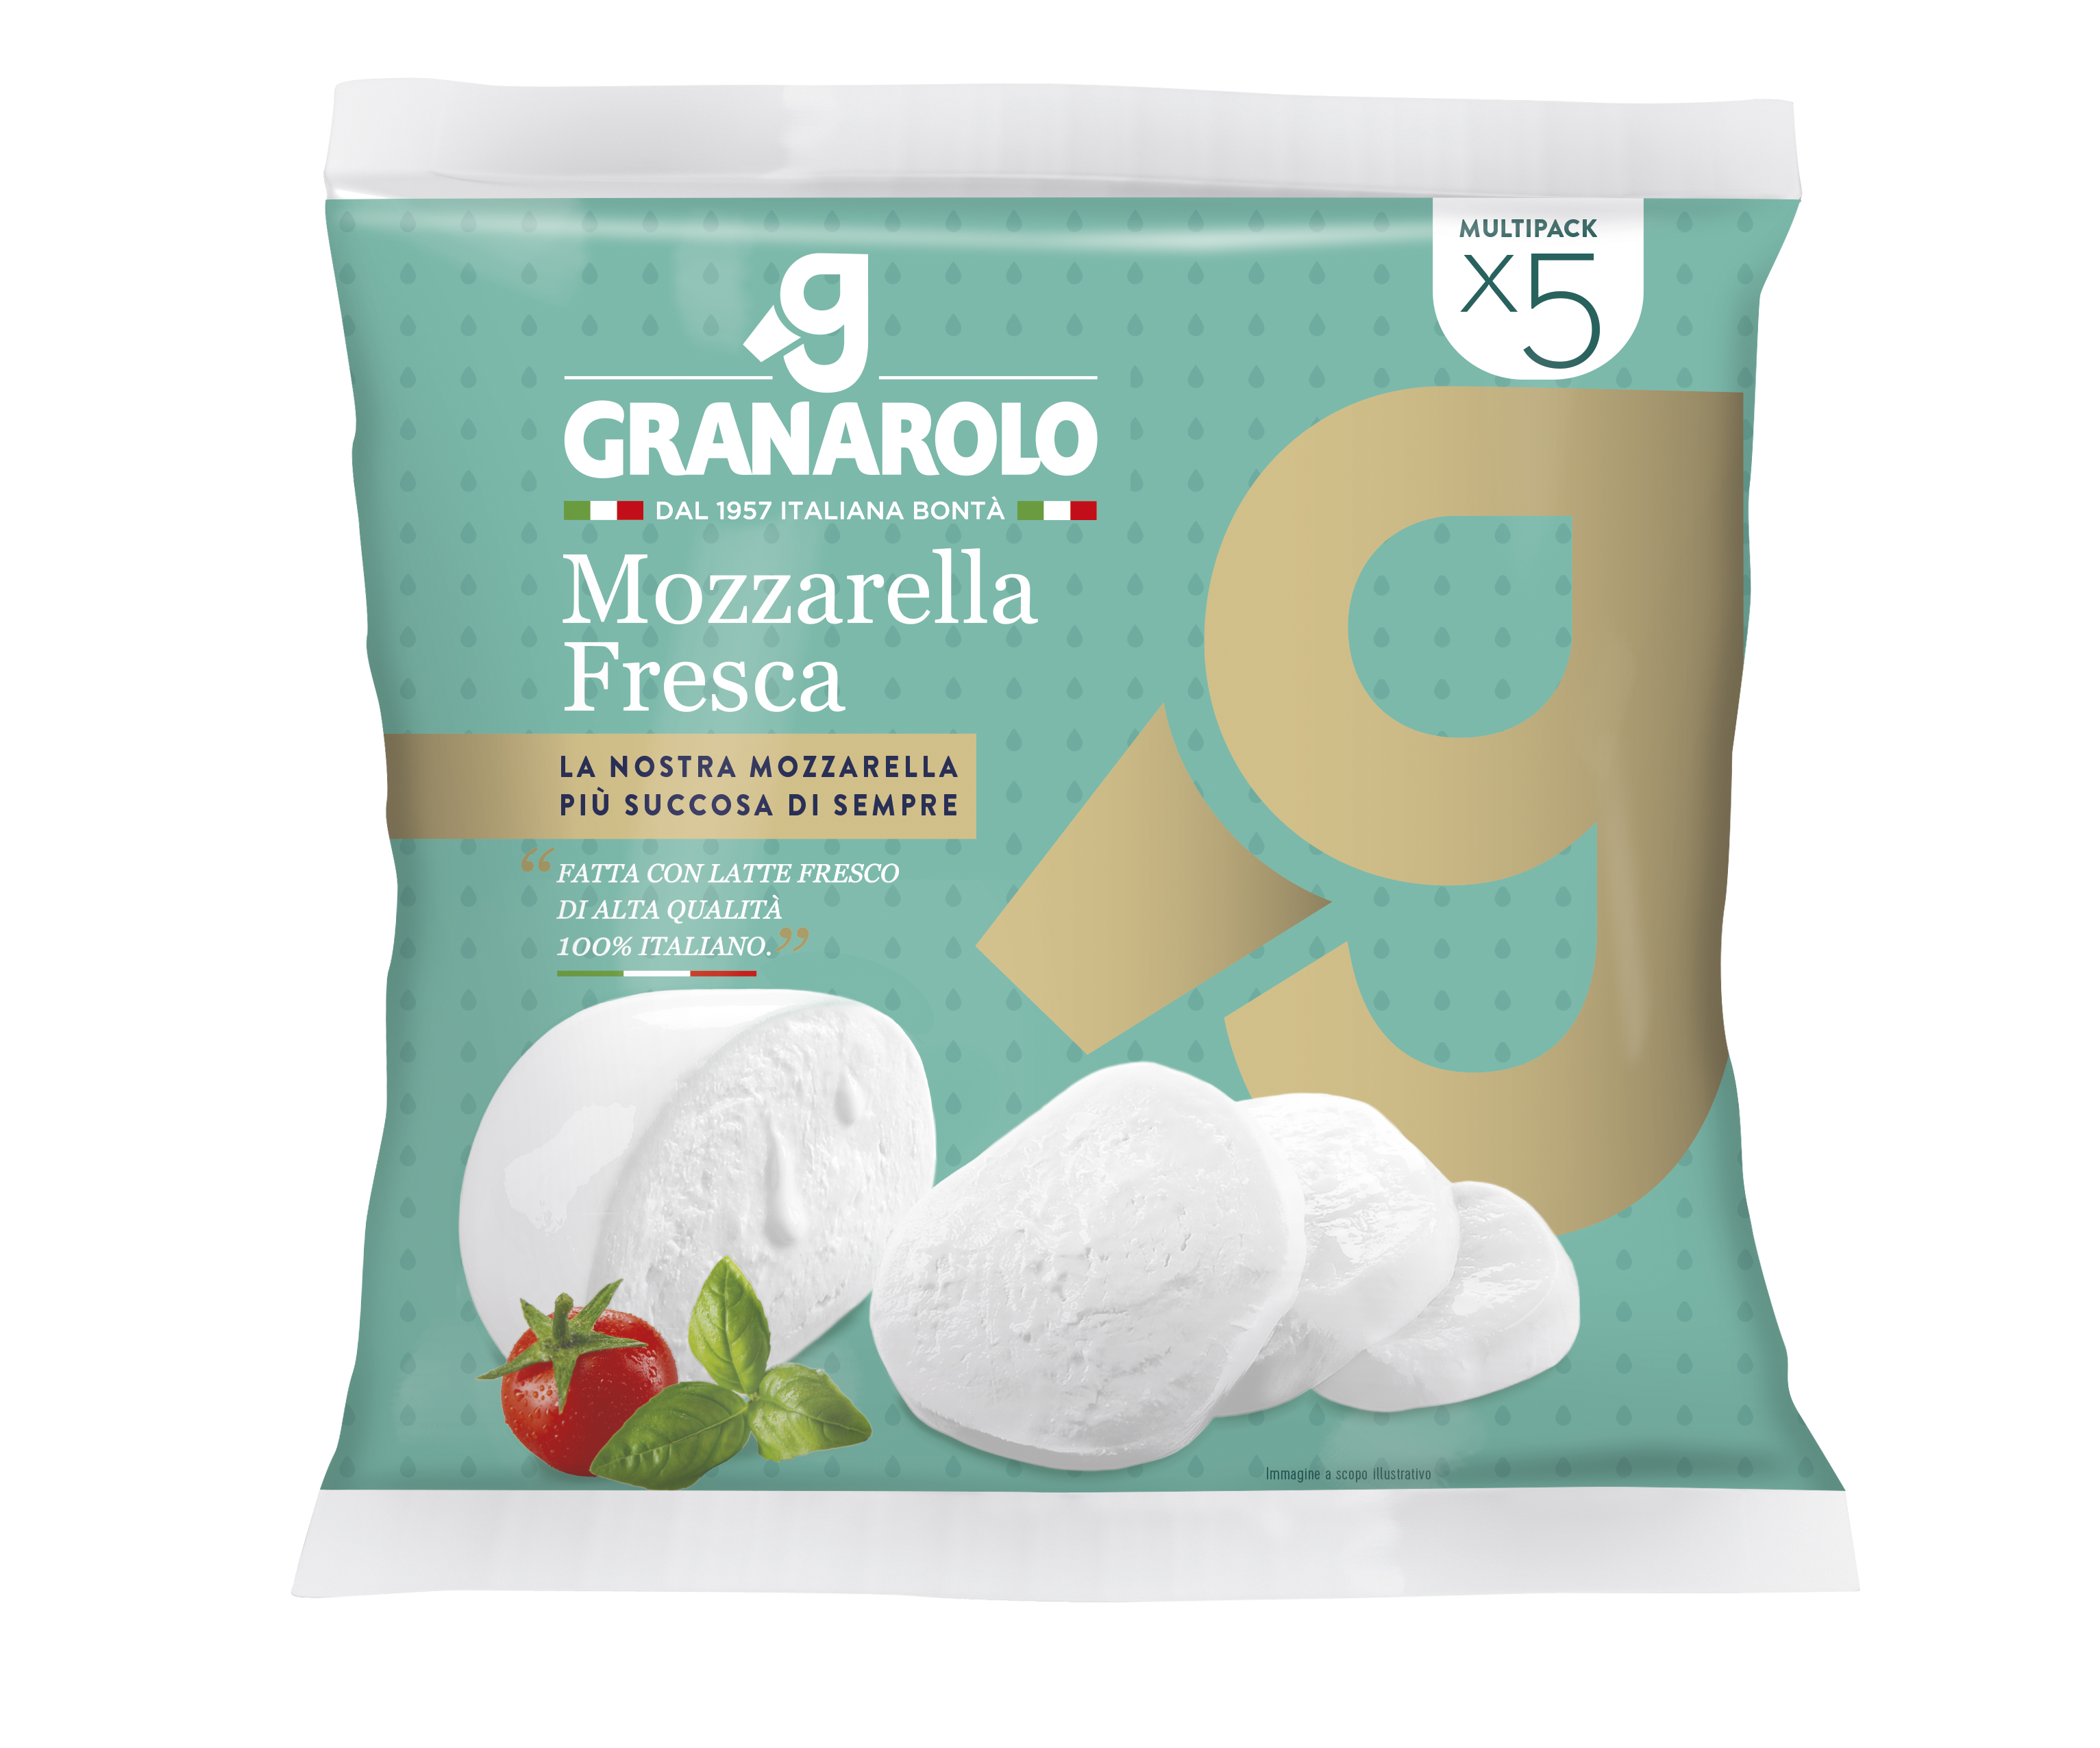 S-P-00128 - Granarolo Mozzarella made from high quality fresh milk